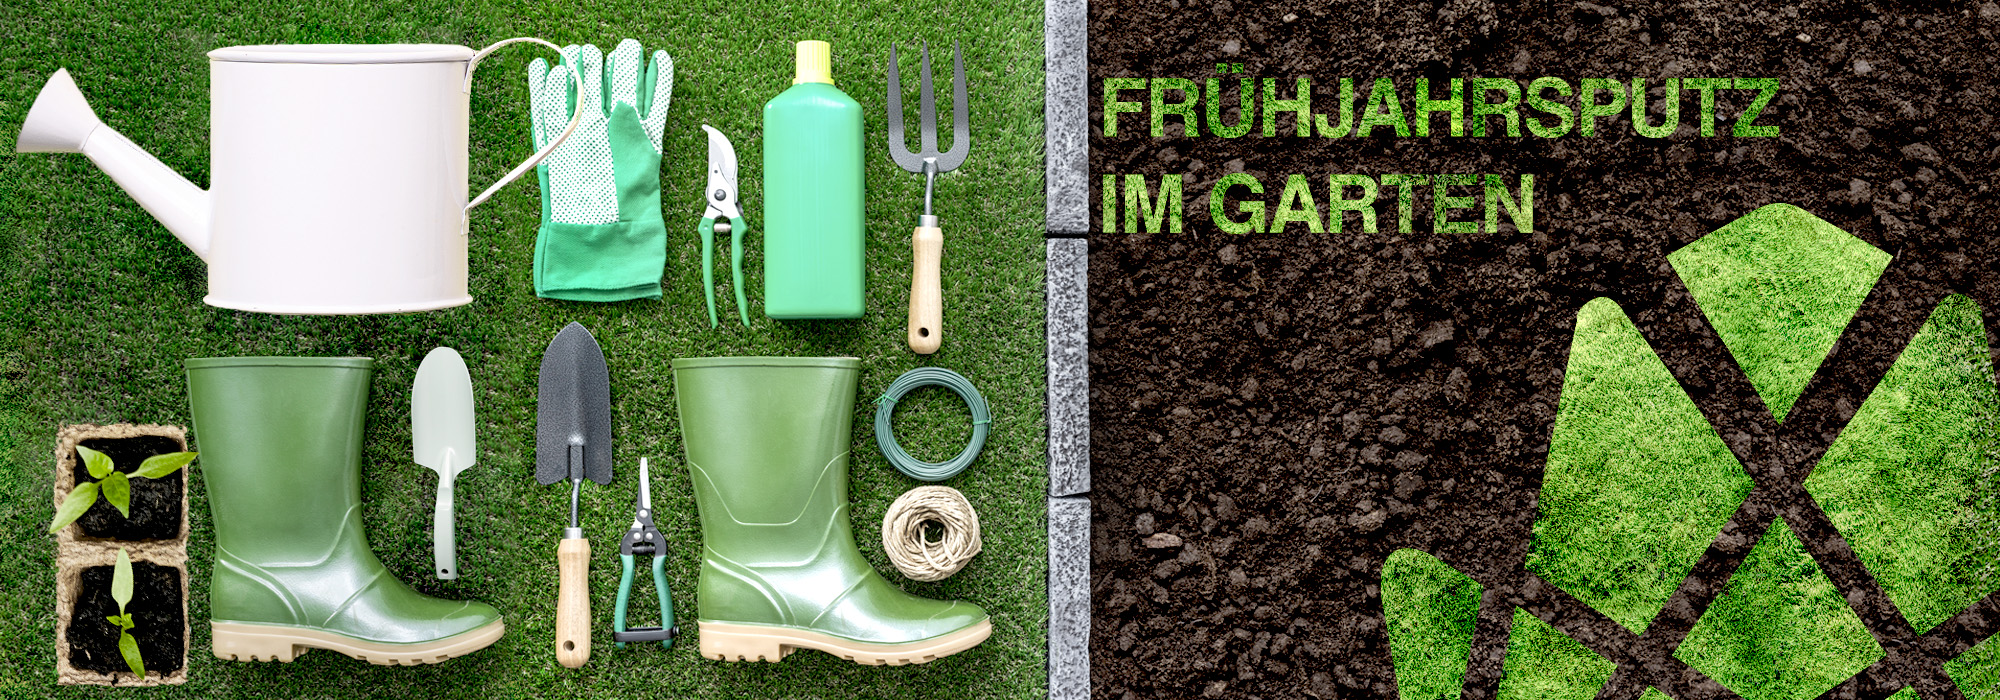 Werkzeuge, die für die Gartenarbeit benötigt werden liegen auf dem Rasen